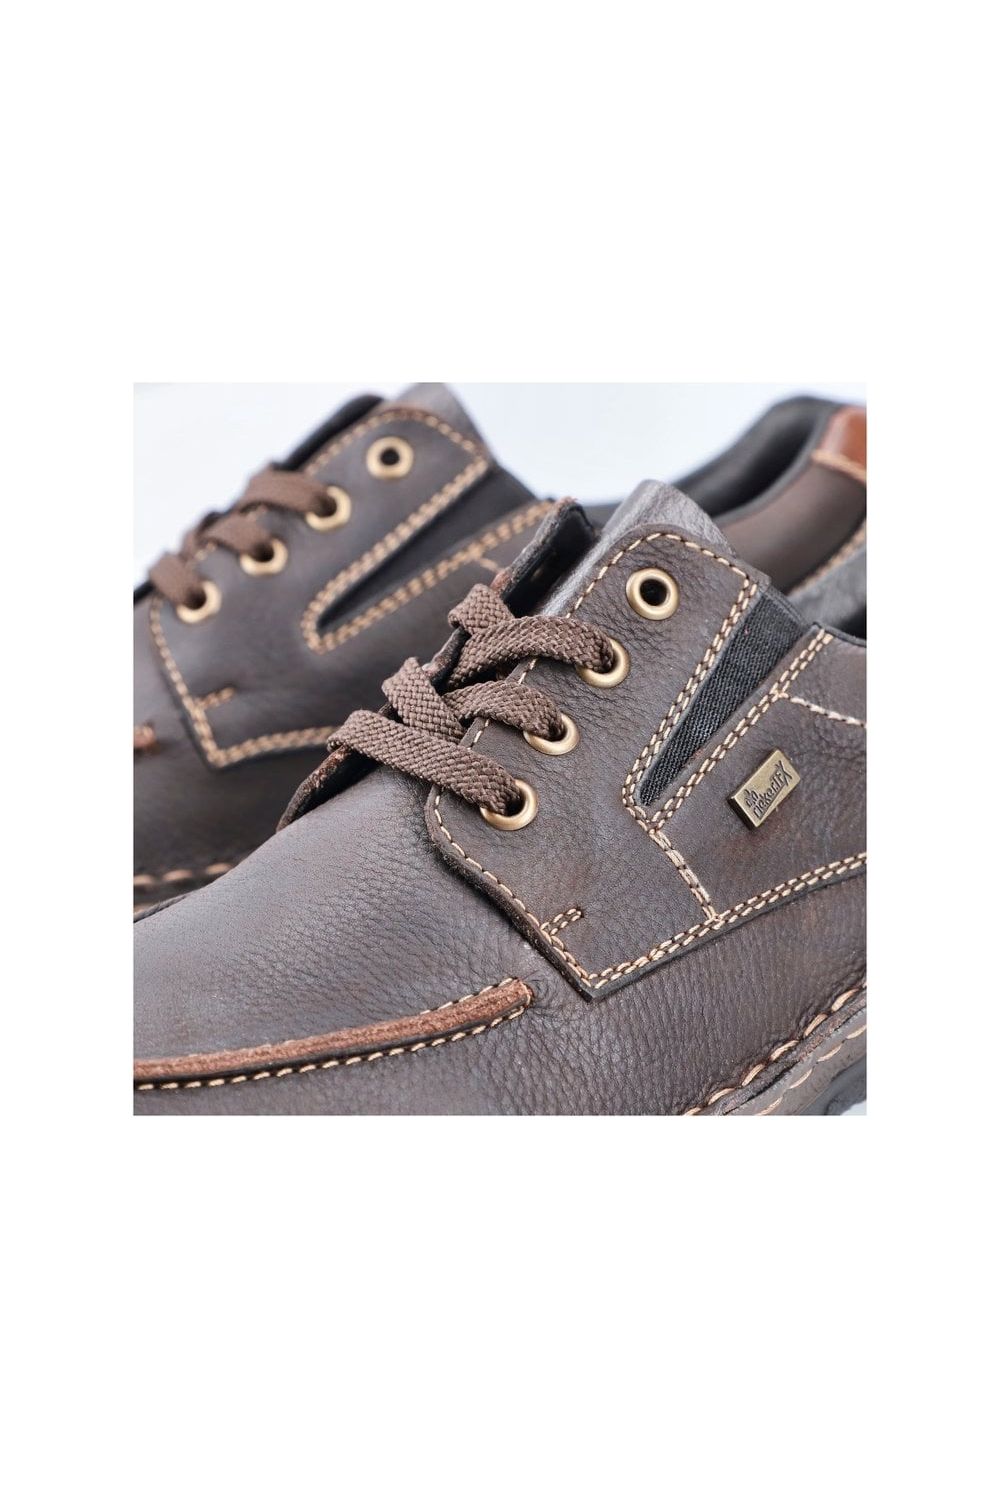 Rieker Mens Shoes 05100 25 brown